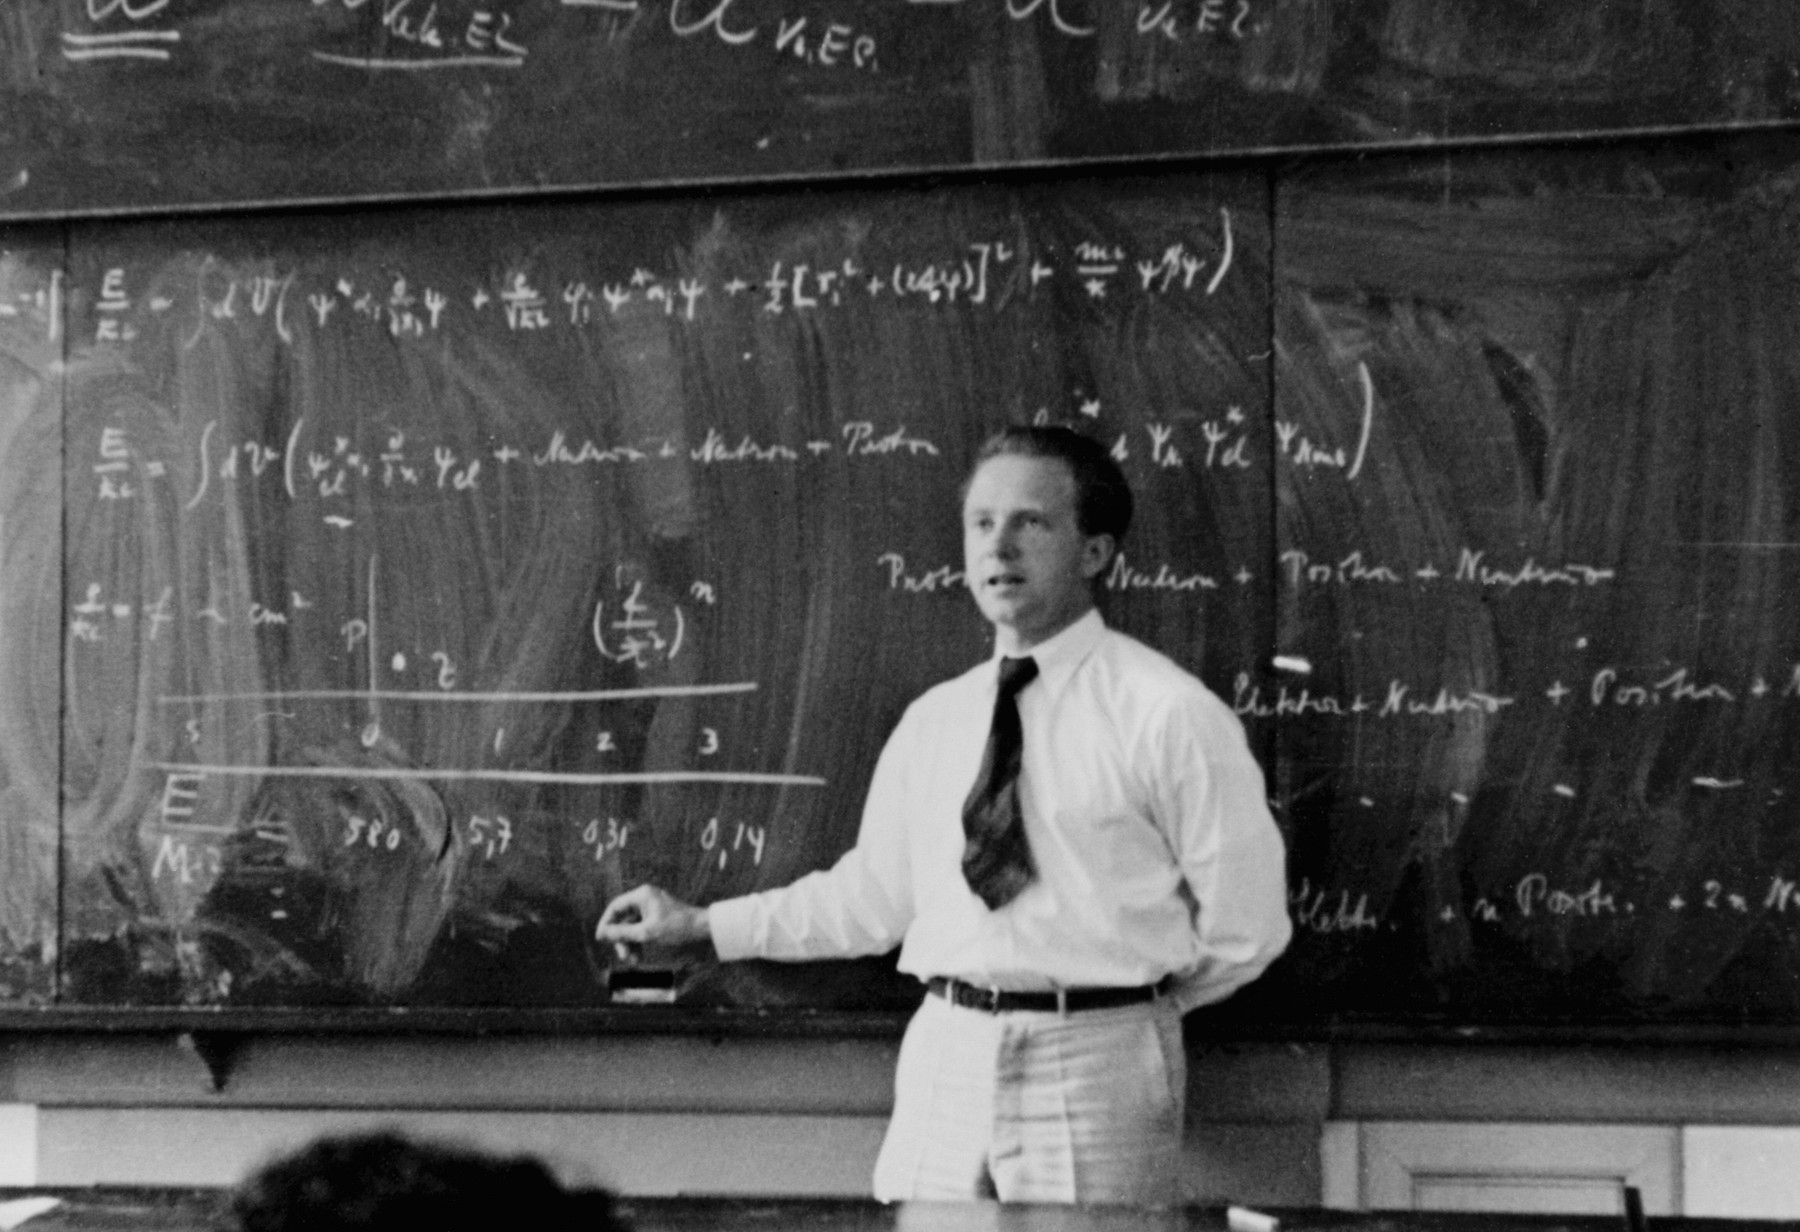 Le physicien allemand Werner Heinsenberg (1901-1976) a révolutionné la physique en découvrant en 1925 la mécanique quantique matricielle. On le voit ici expliquer la théorie quantique en 1936. Heisenberg avait rejeté la notion de trajectoire pour les électrons circulant au sein d'un atome, jetant ainsi les bases d'une nouvelle conception de la géométrie de l'espace et du temps, et pas seulement d'une nouvelle physique de la matière et du rayonnement. © AIP Emilio Segre Visual Archives  